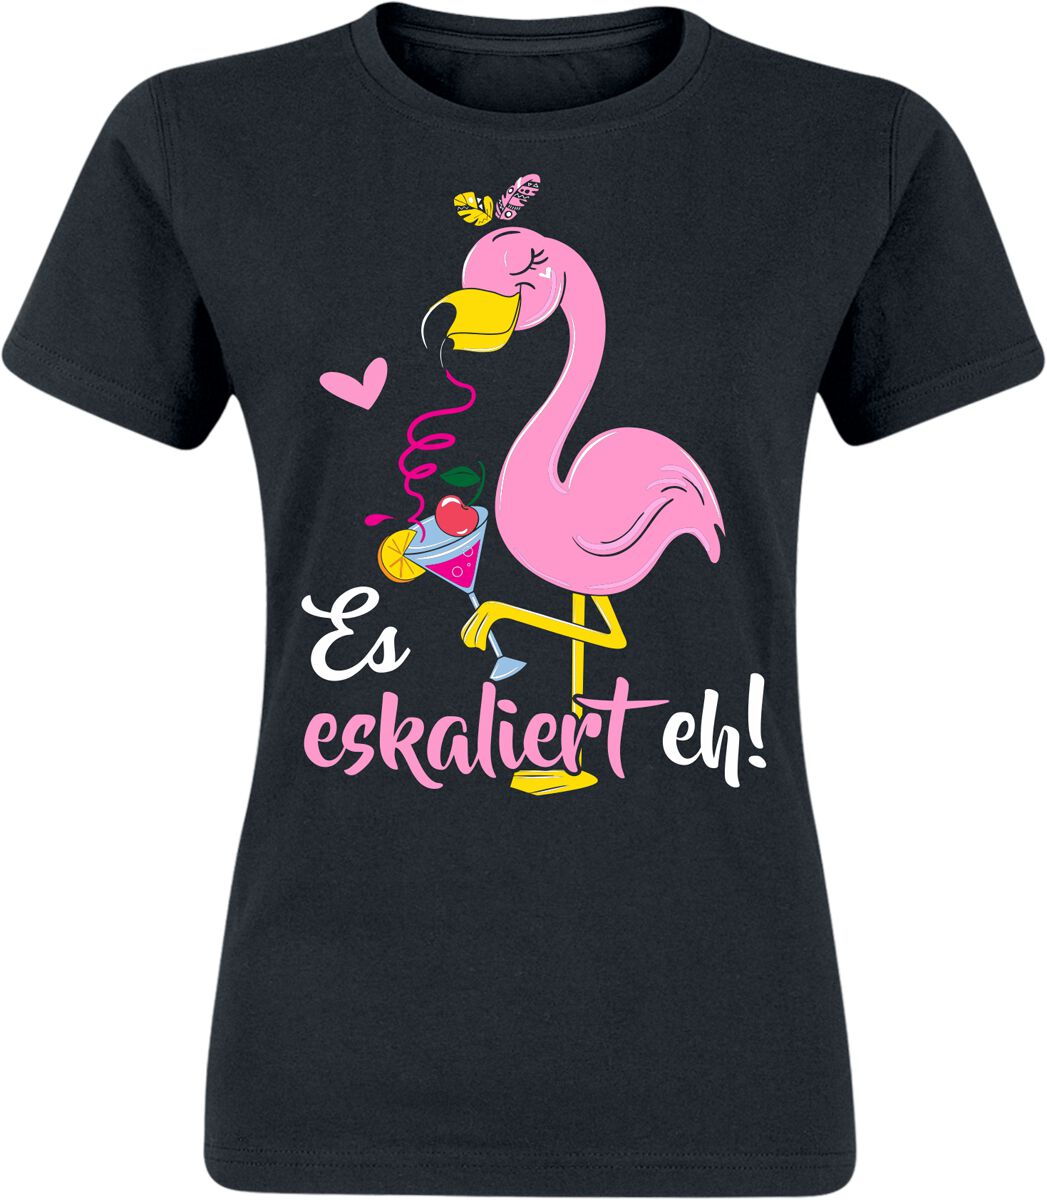 Alkohol & Party T-Shirt - Flamingo - Es eskaliert eh! - S bis XXL - für Damen - Größe L - schwarz